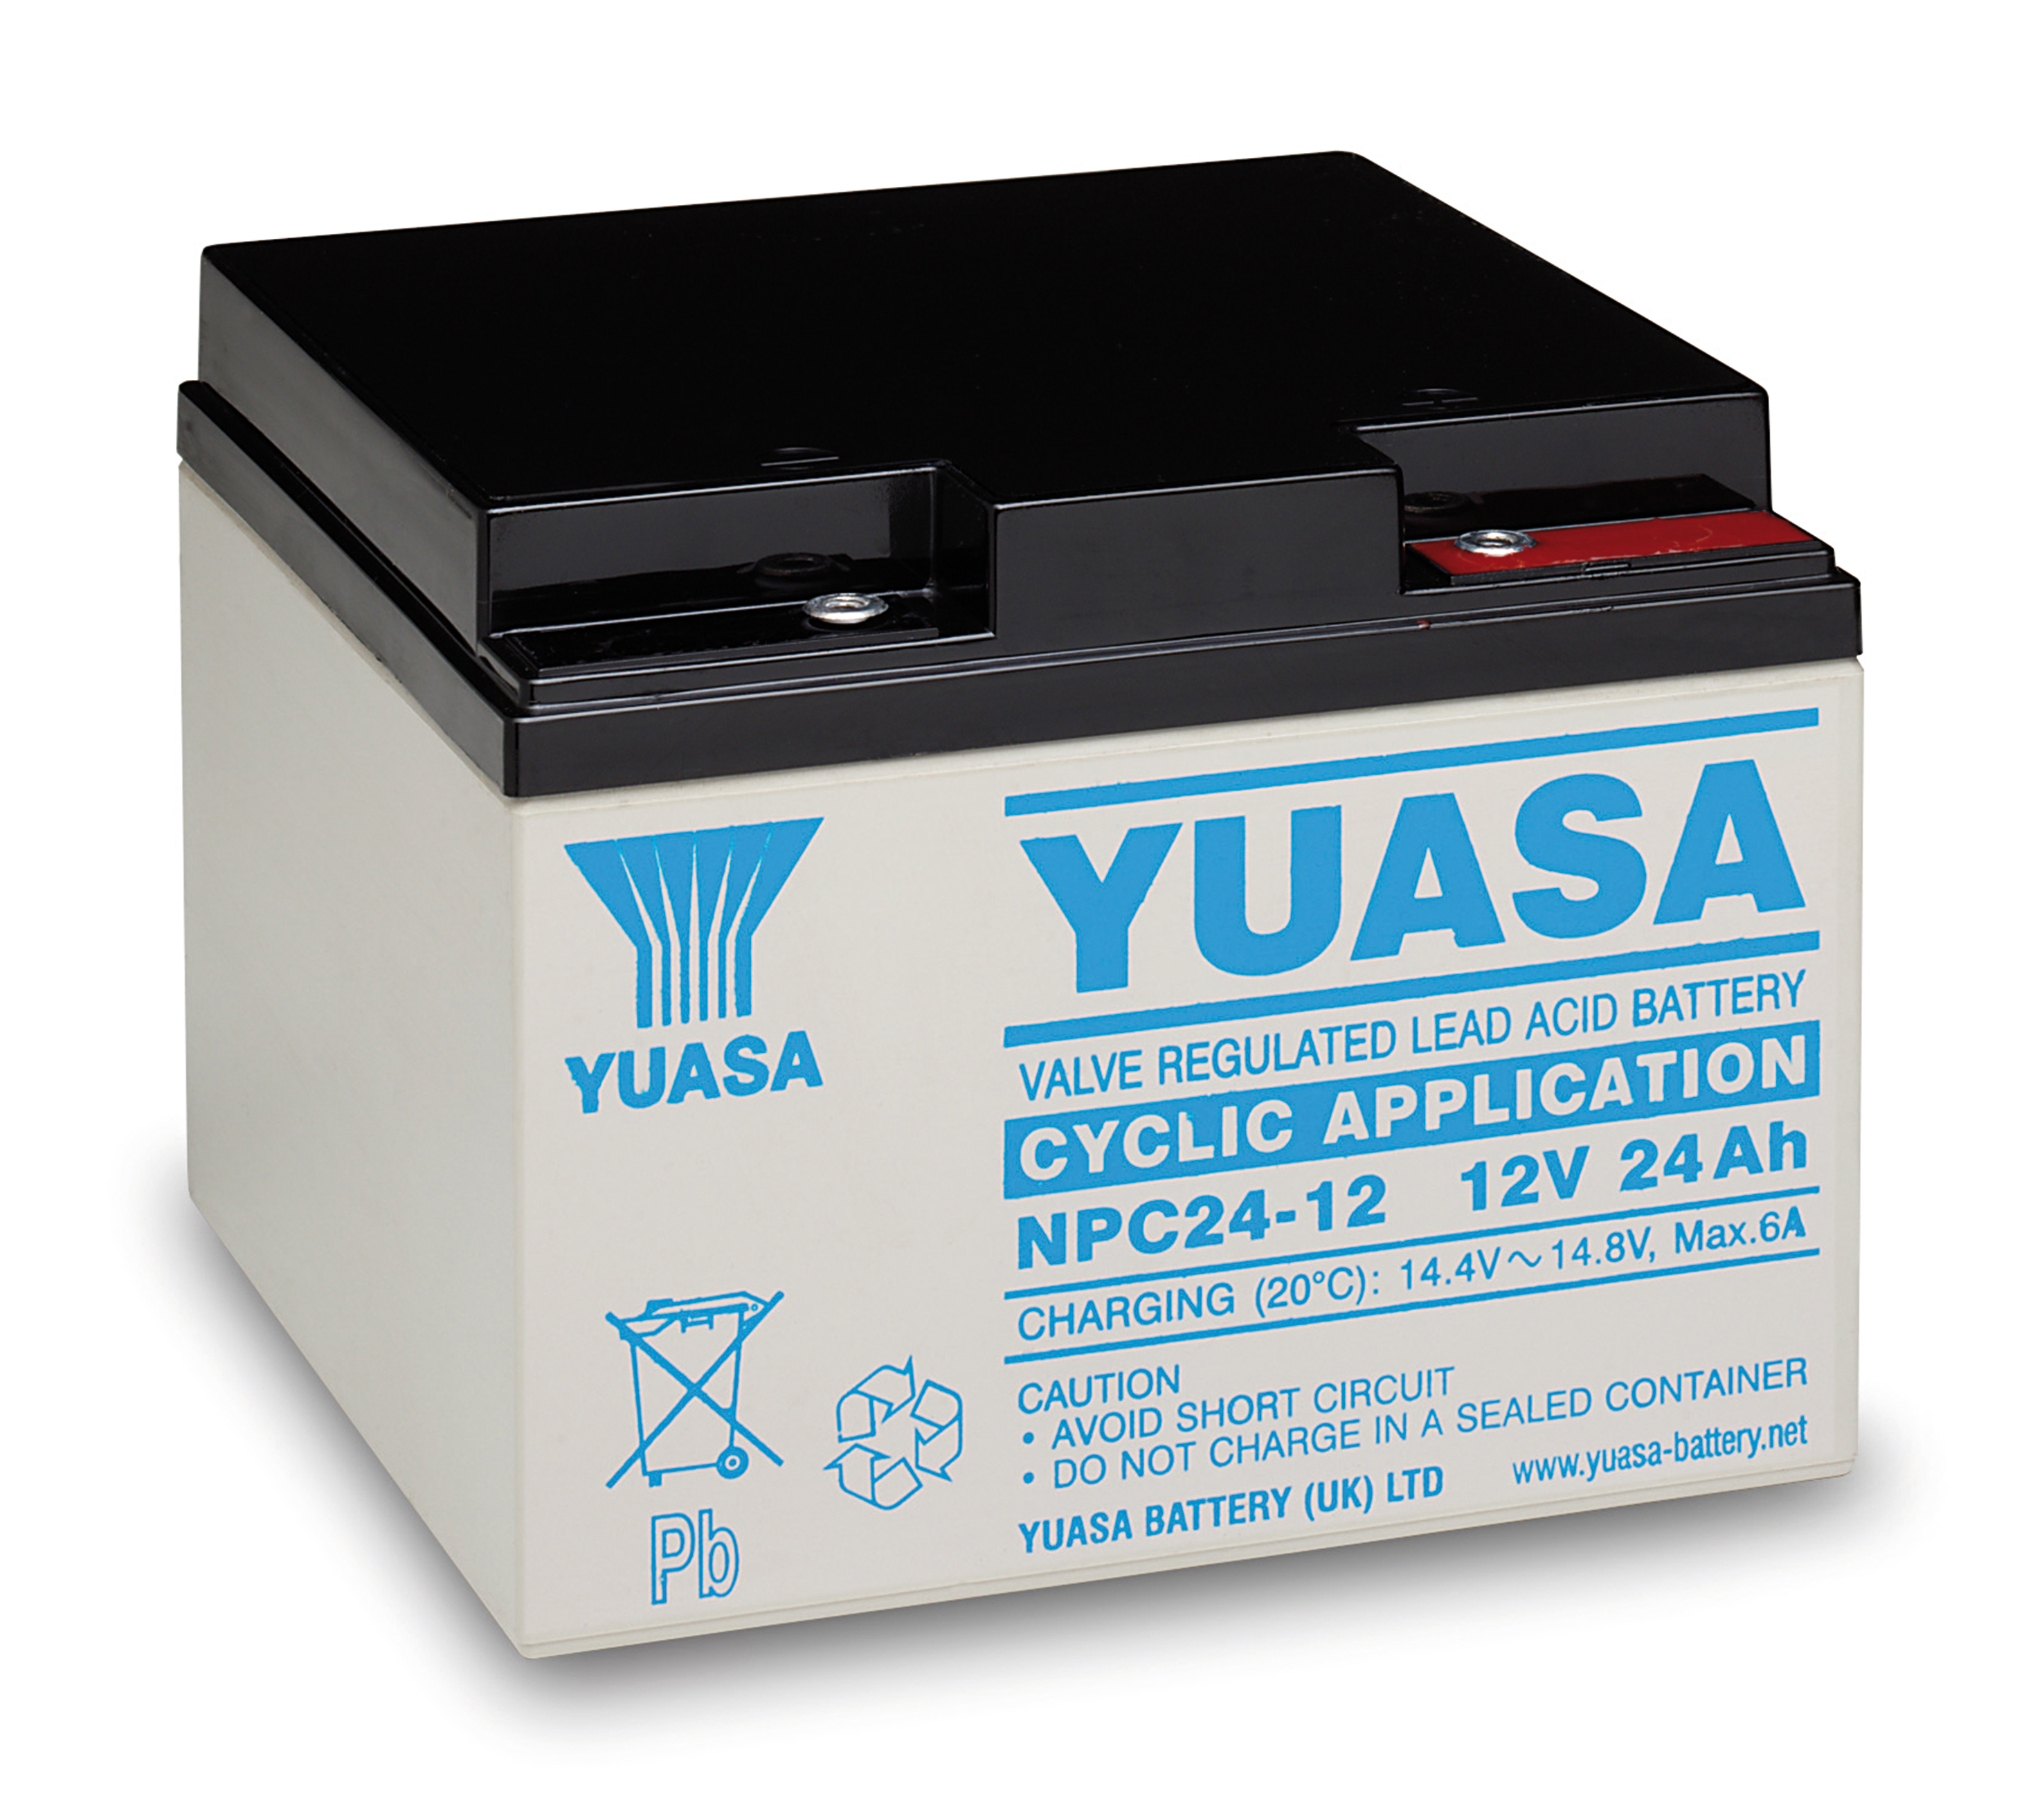 YUASA Plomb Etanche NPC24-12 - applications cycliques 12V 24Ah YUASA